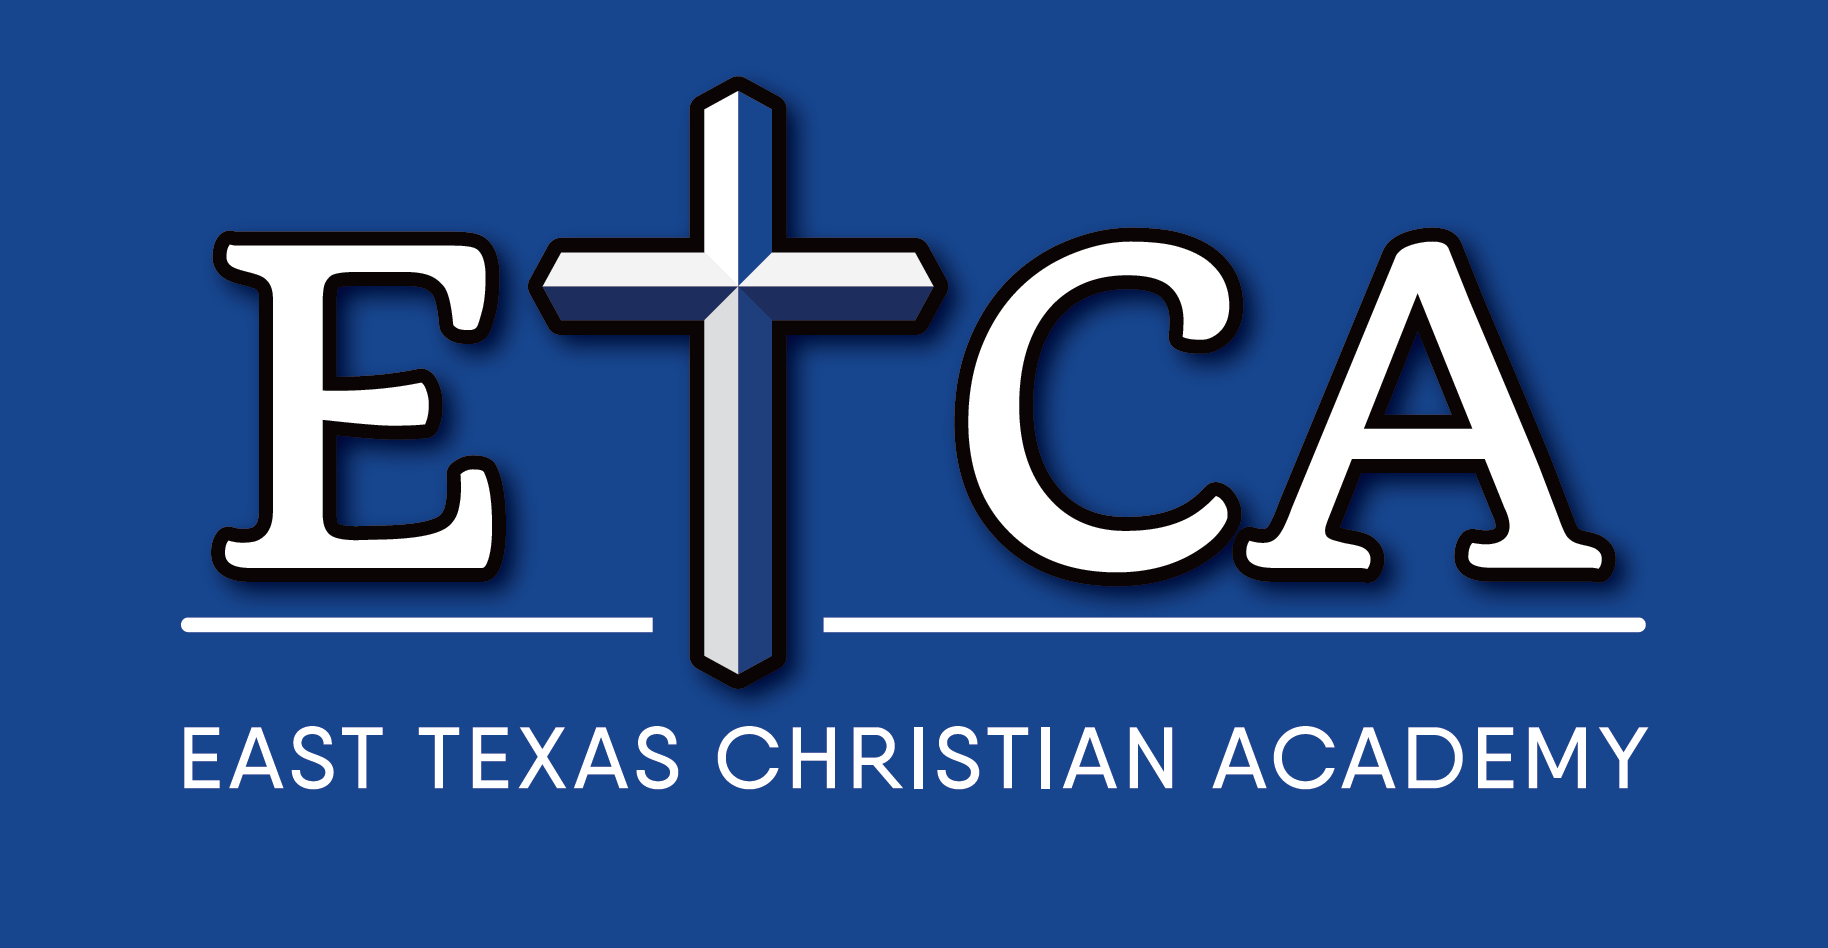 EAST TEXAS CHRISTIAN ACADEMY logo